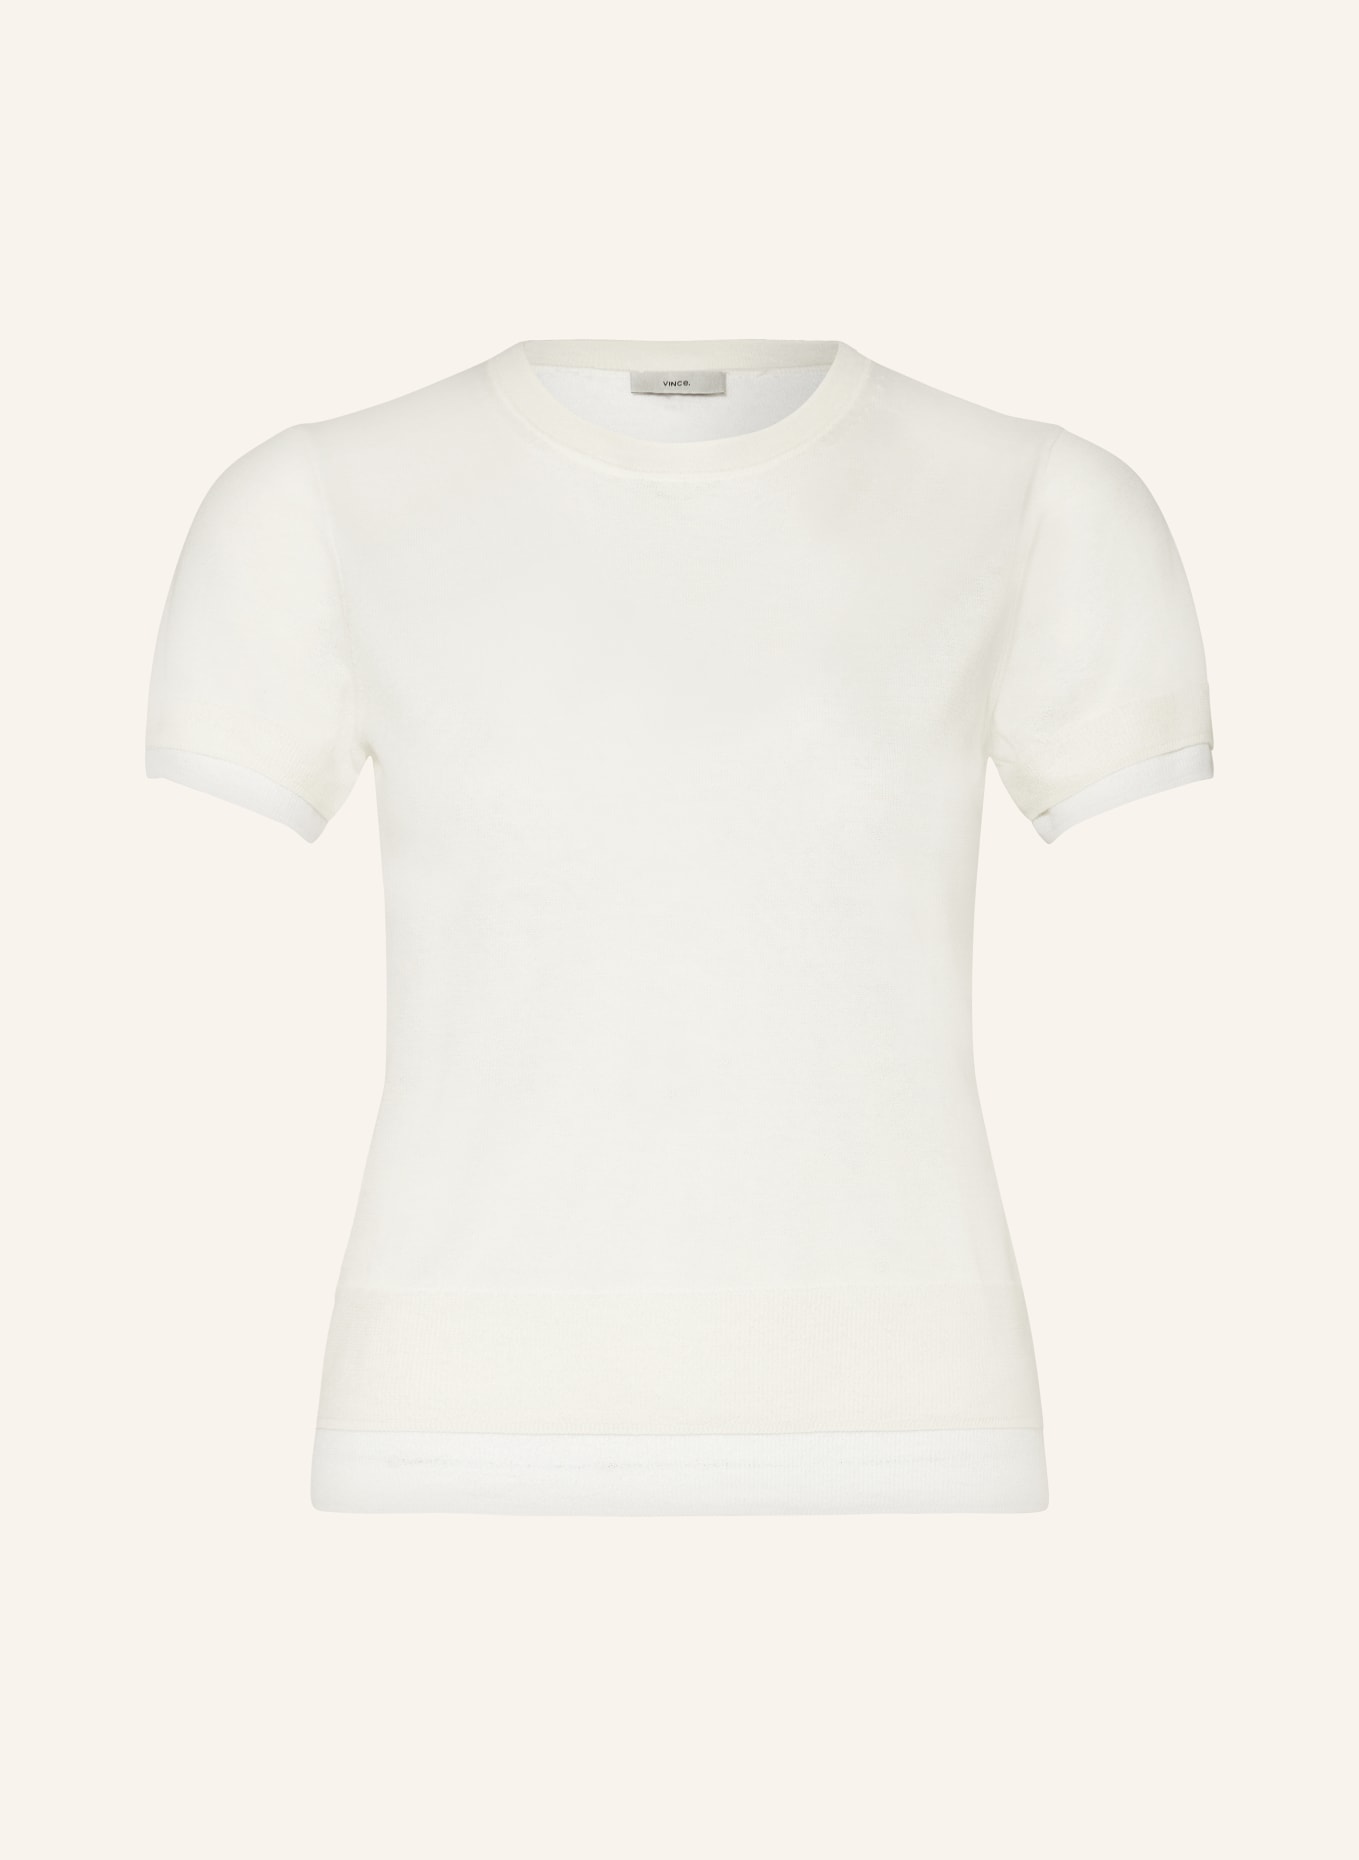 VINCE T-shirt, Color: CREAM (Image 1)